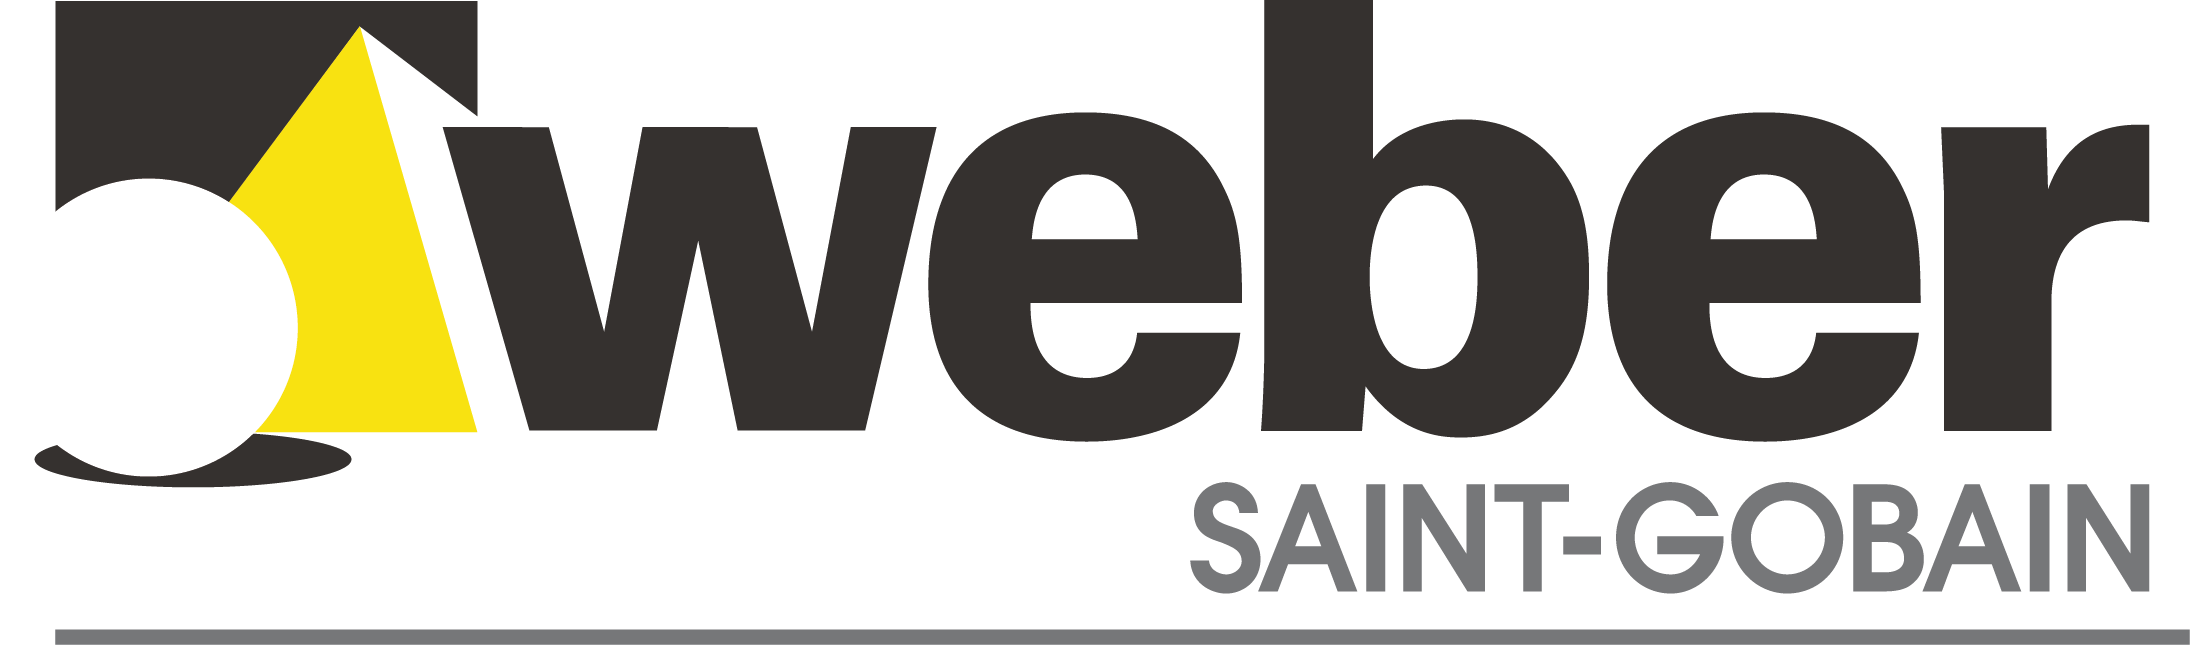 saint-gobain-weber-logo